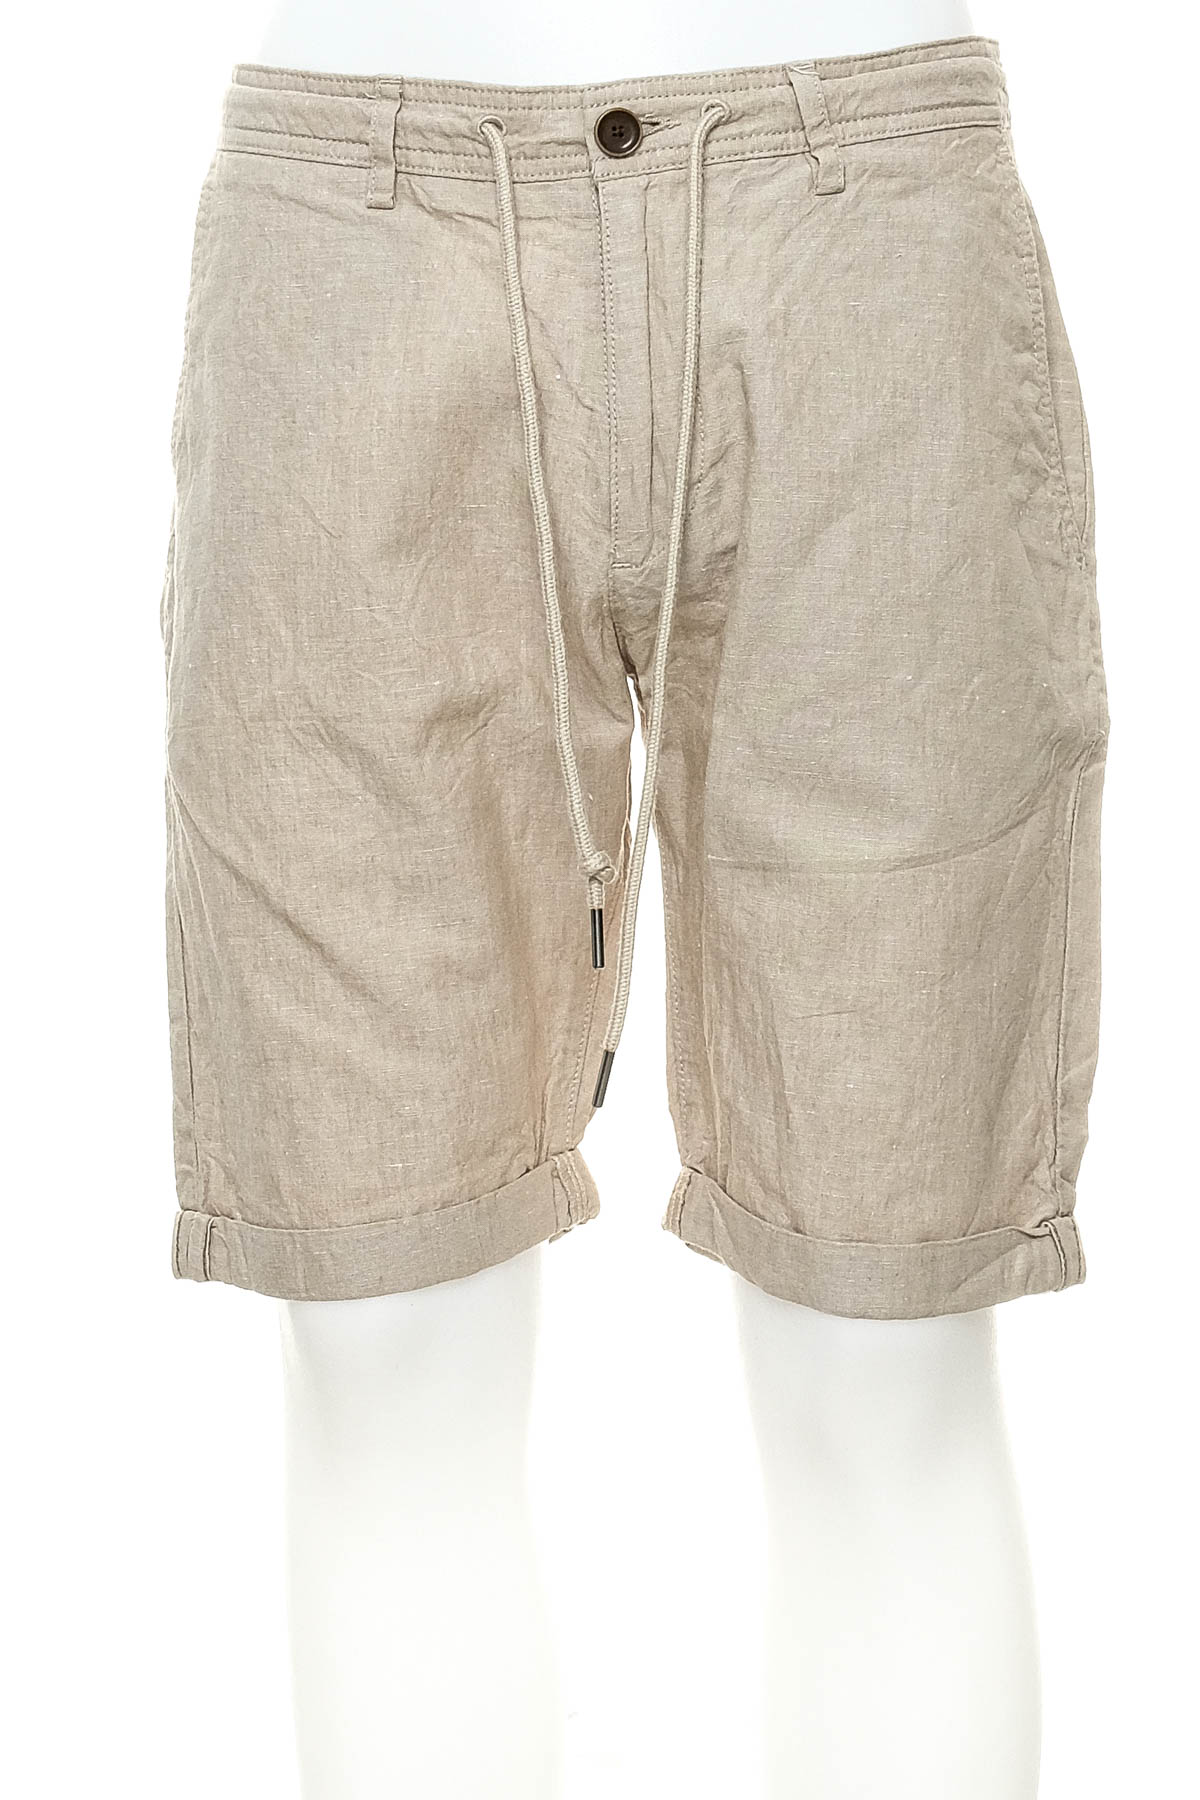 Men's shorts - S.Oliver - 0